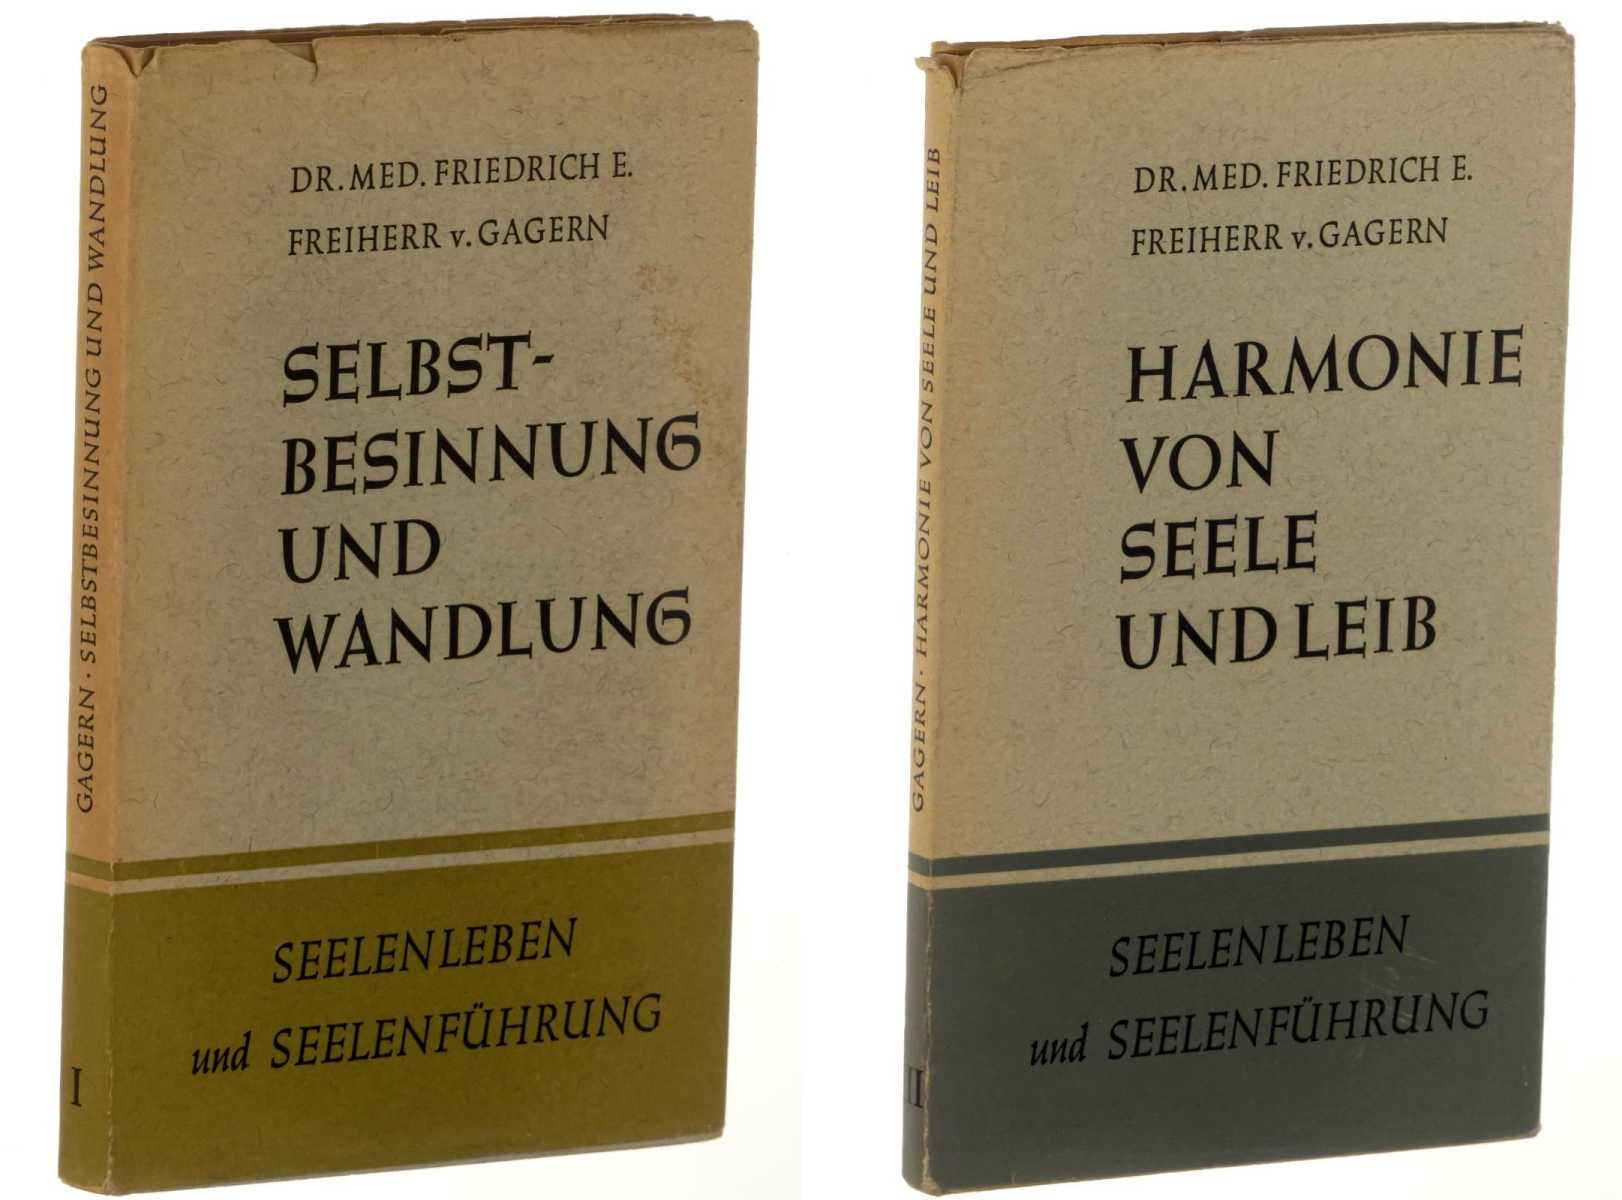 Gagern, Friedrich E. von:  Seelenleben und Seelenführung. Bände 1 und 3. Selbstbesinnung und Wandlung; Harmonie von Seele und Leib. 